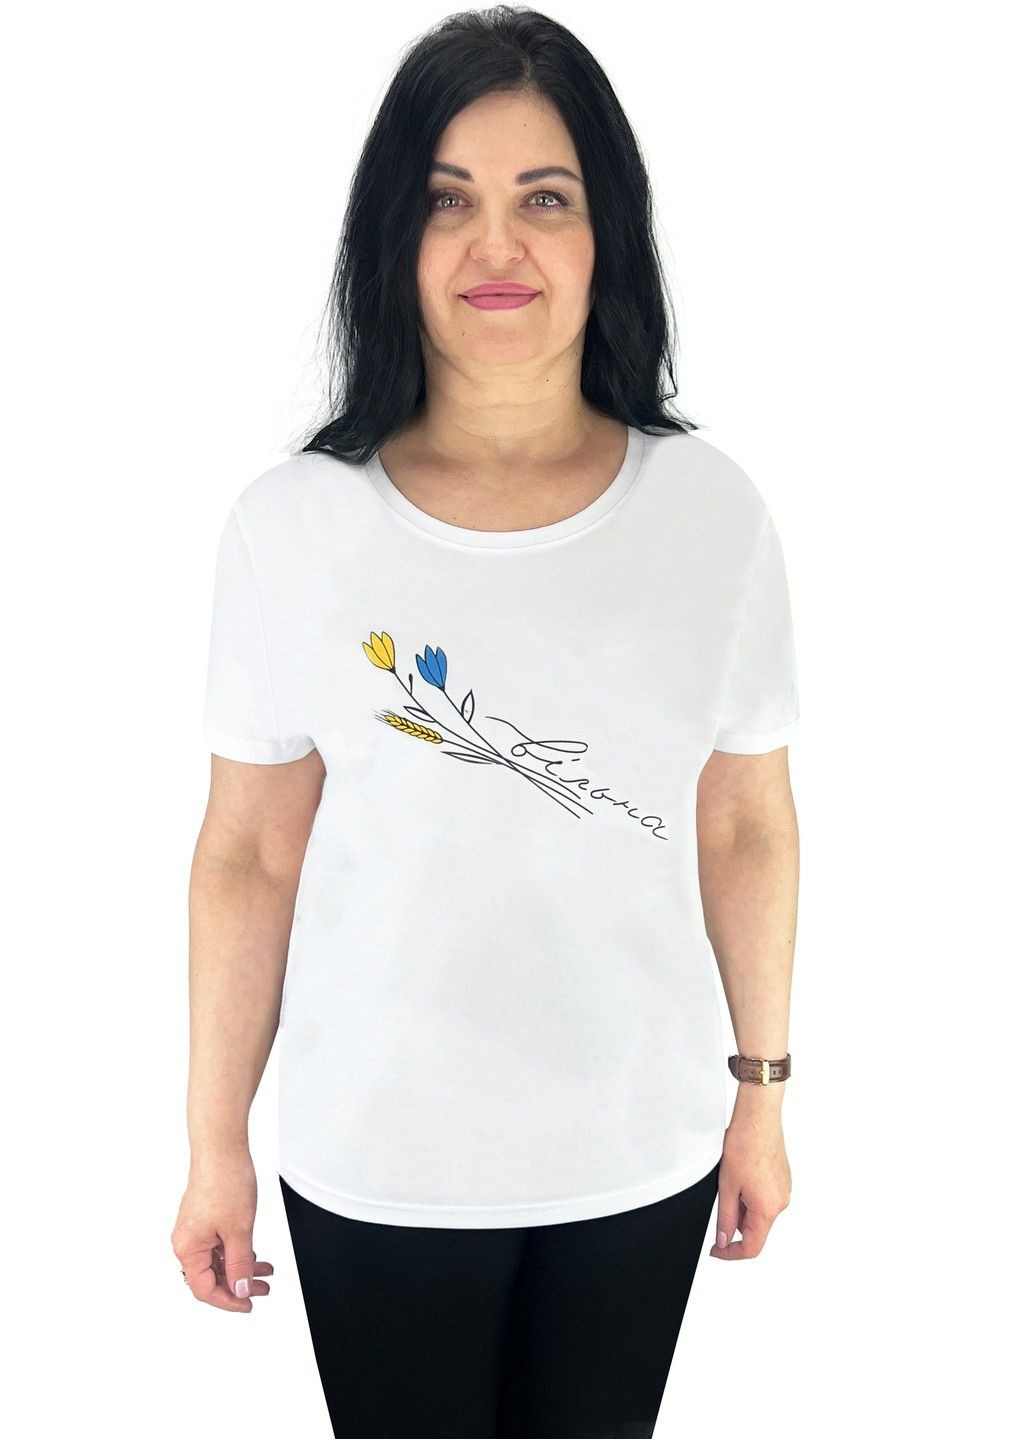 Белая футболка женская с накатом цветы с коротким рукавом Жемчужина стилей 4695